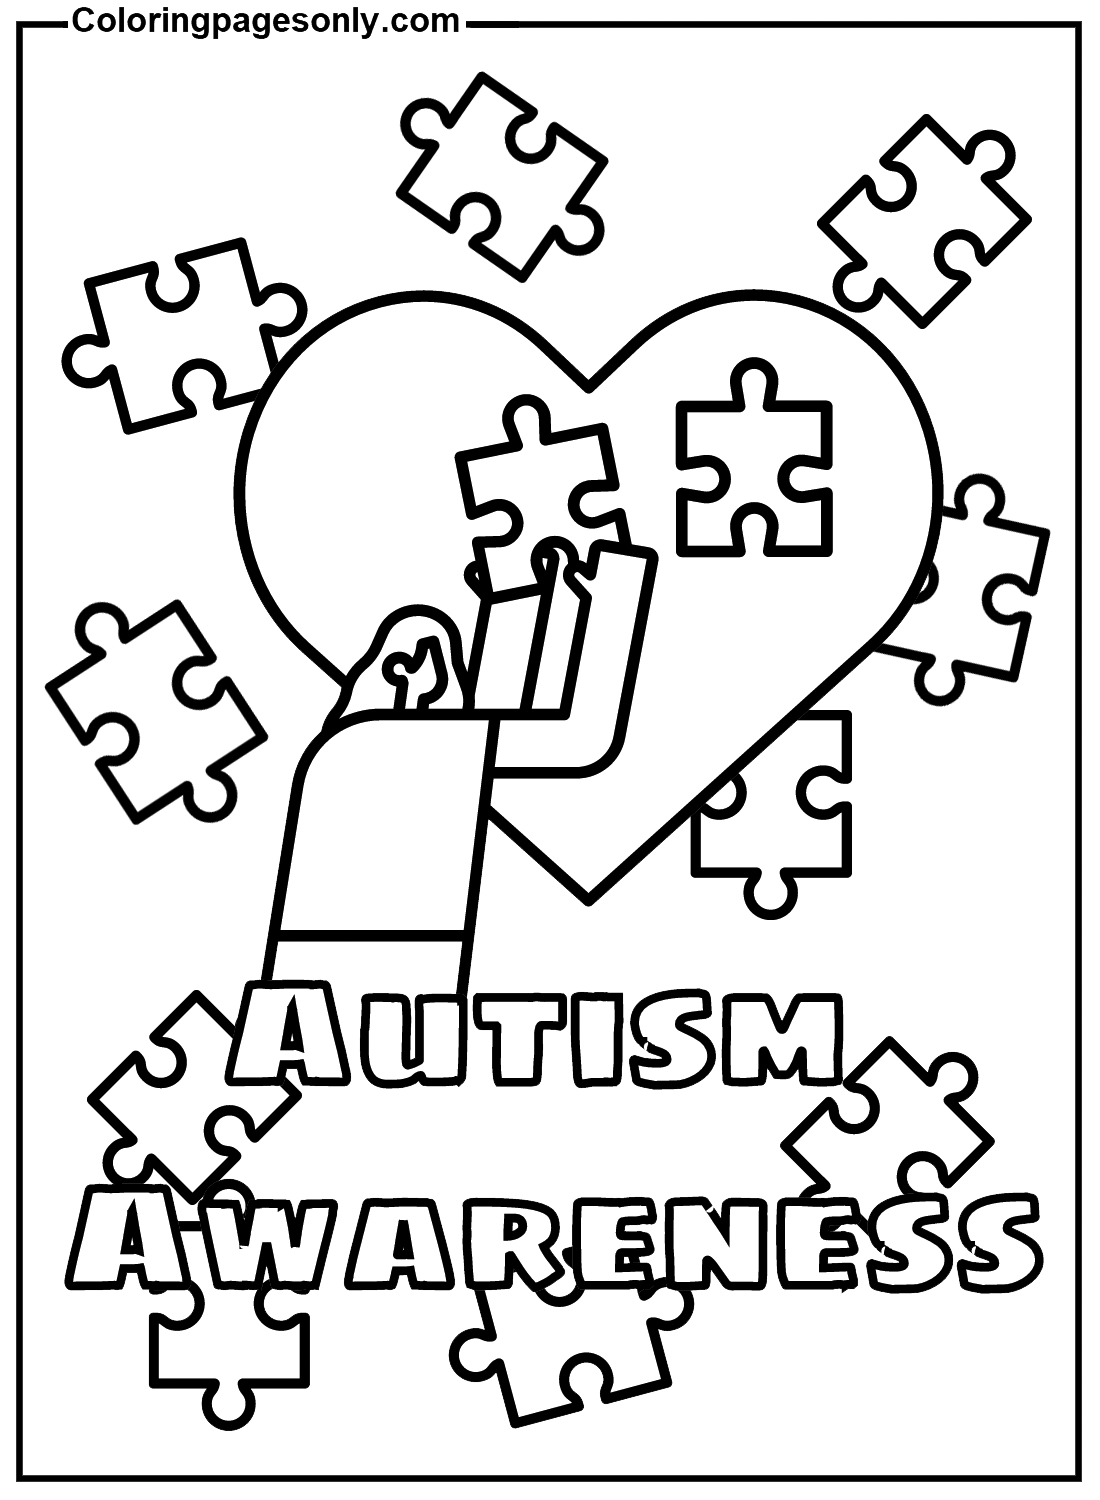 Consapevolezza gratuita sull'autismo dalla Giornata Mondiale della Consapevolezza sull'Autismo